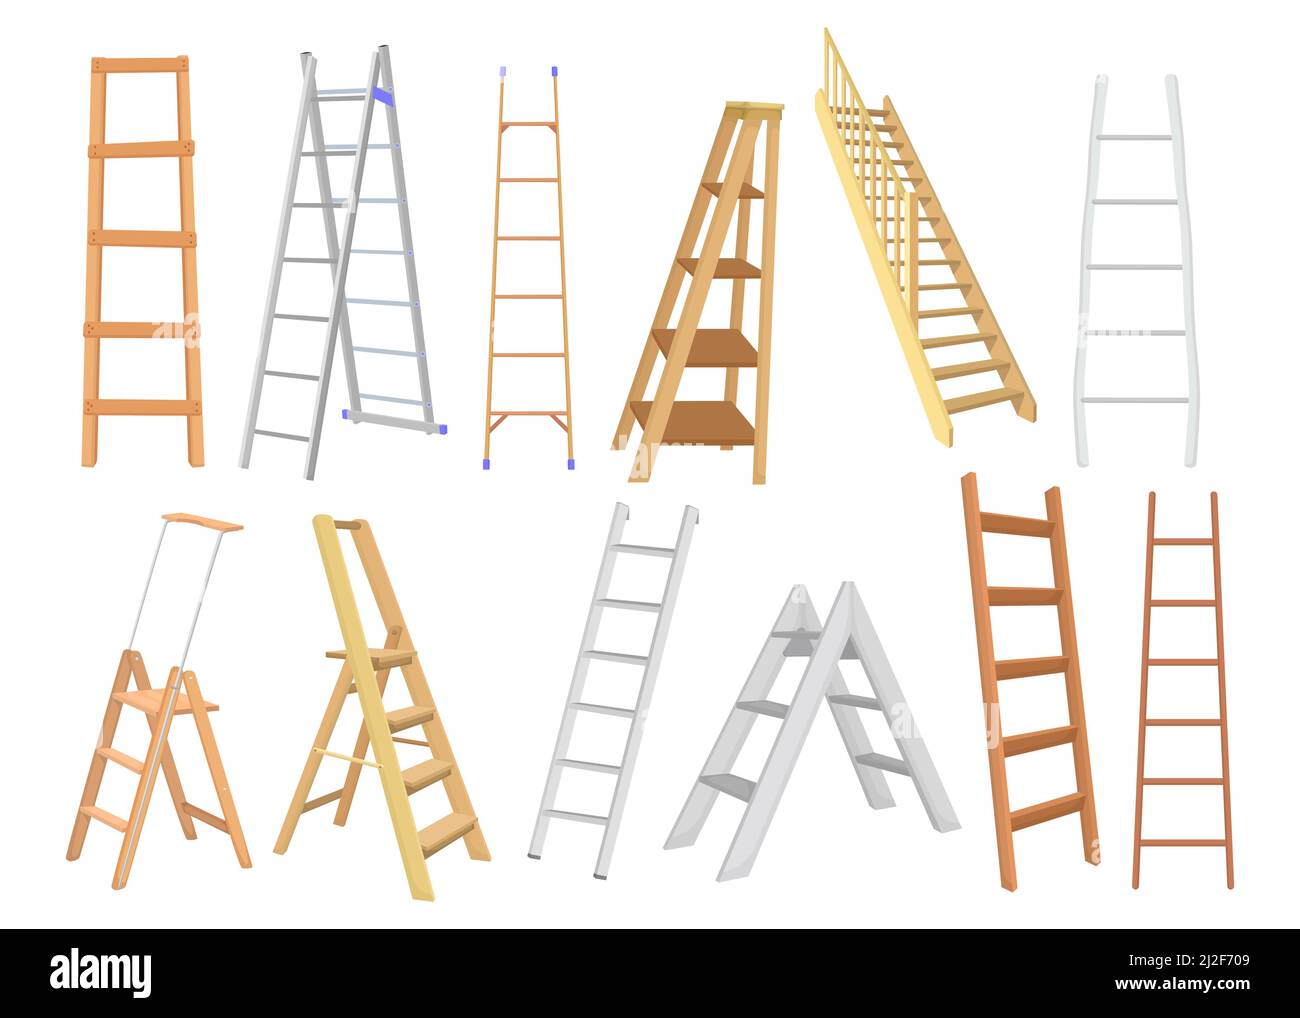 Creative metal y escaleras de madera juego plano para el diseño de la tela. Dibujos animados Diferentes tipos de escaleras para pintores y constructores aislados vectores illustrati Ilustración del Vector